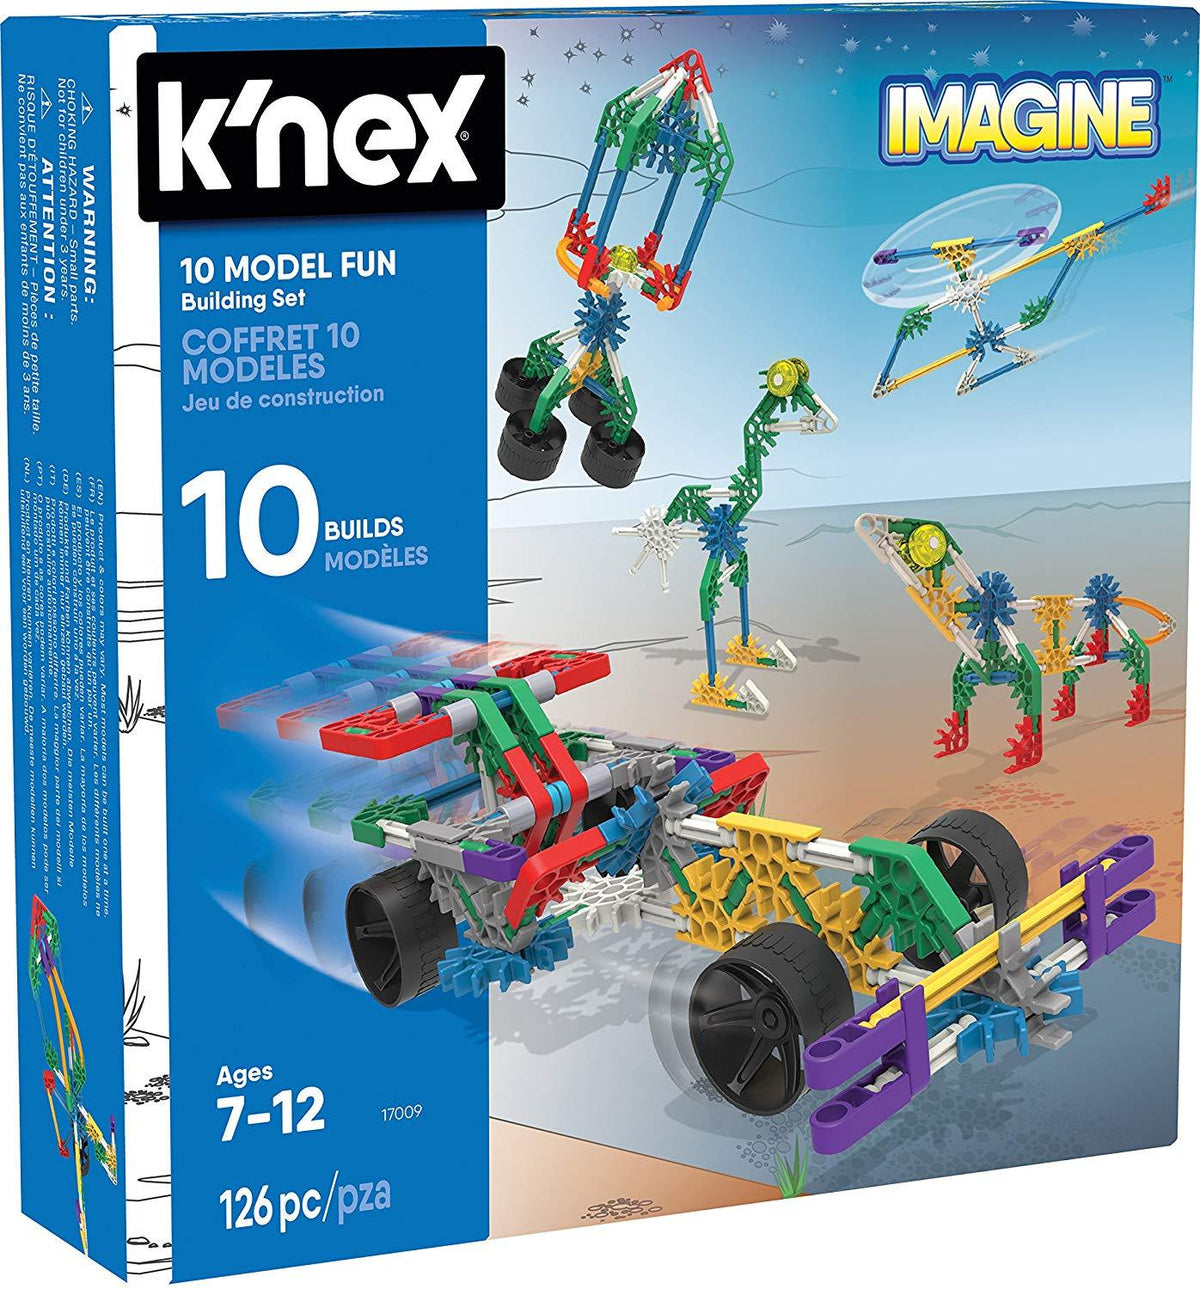 KNEX Imagine 10 Model Building Set